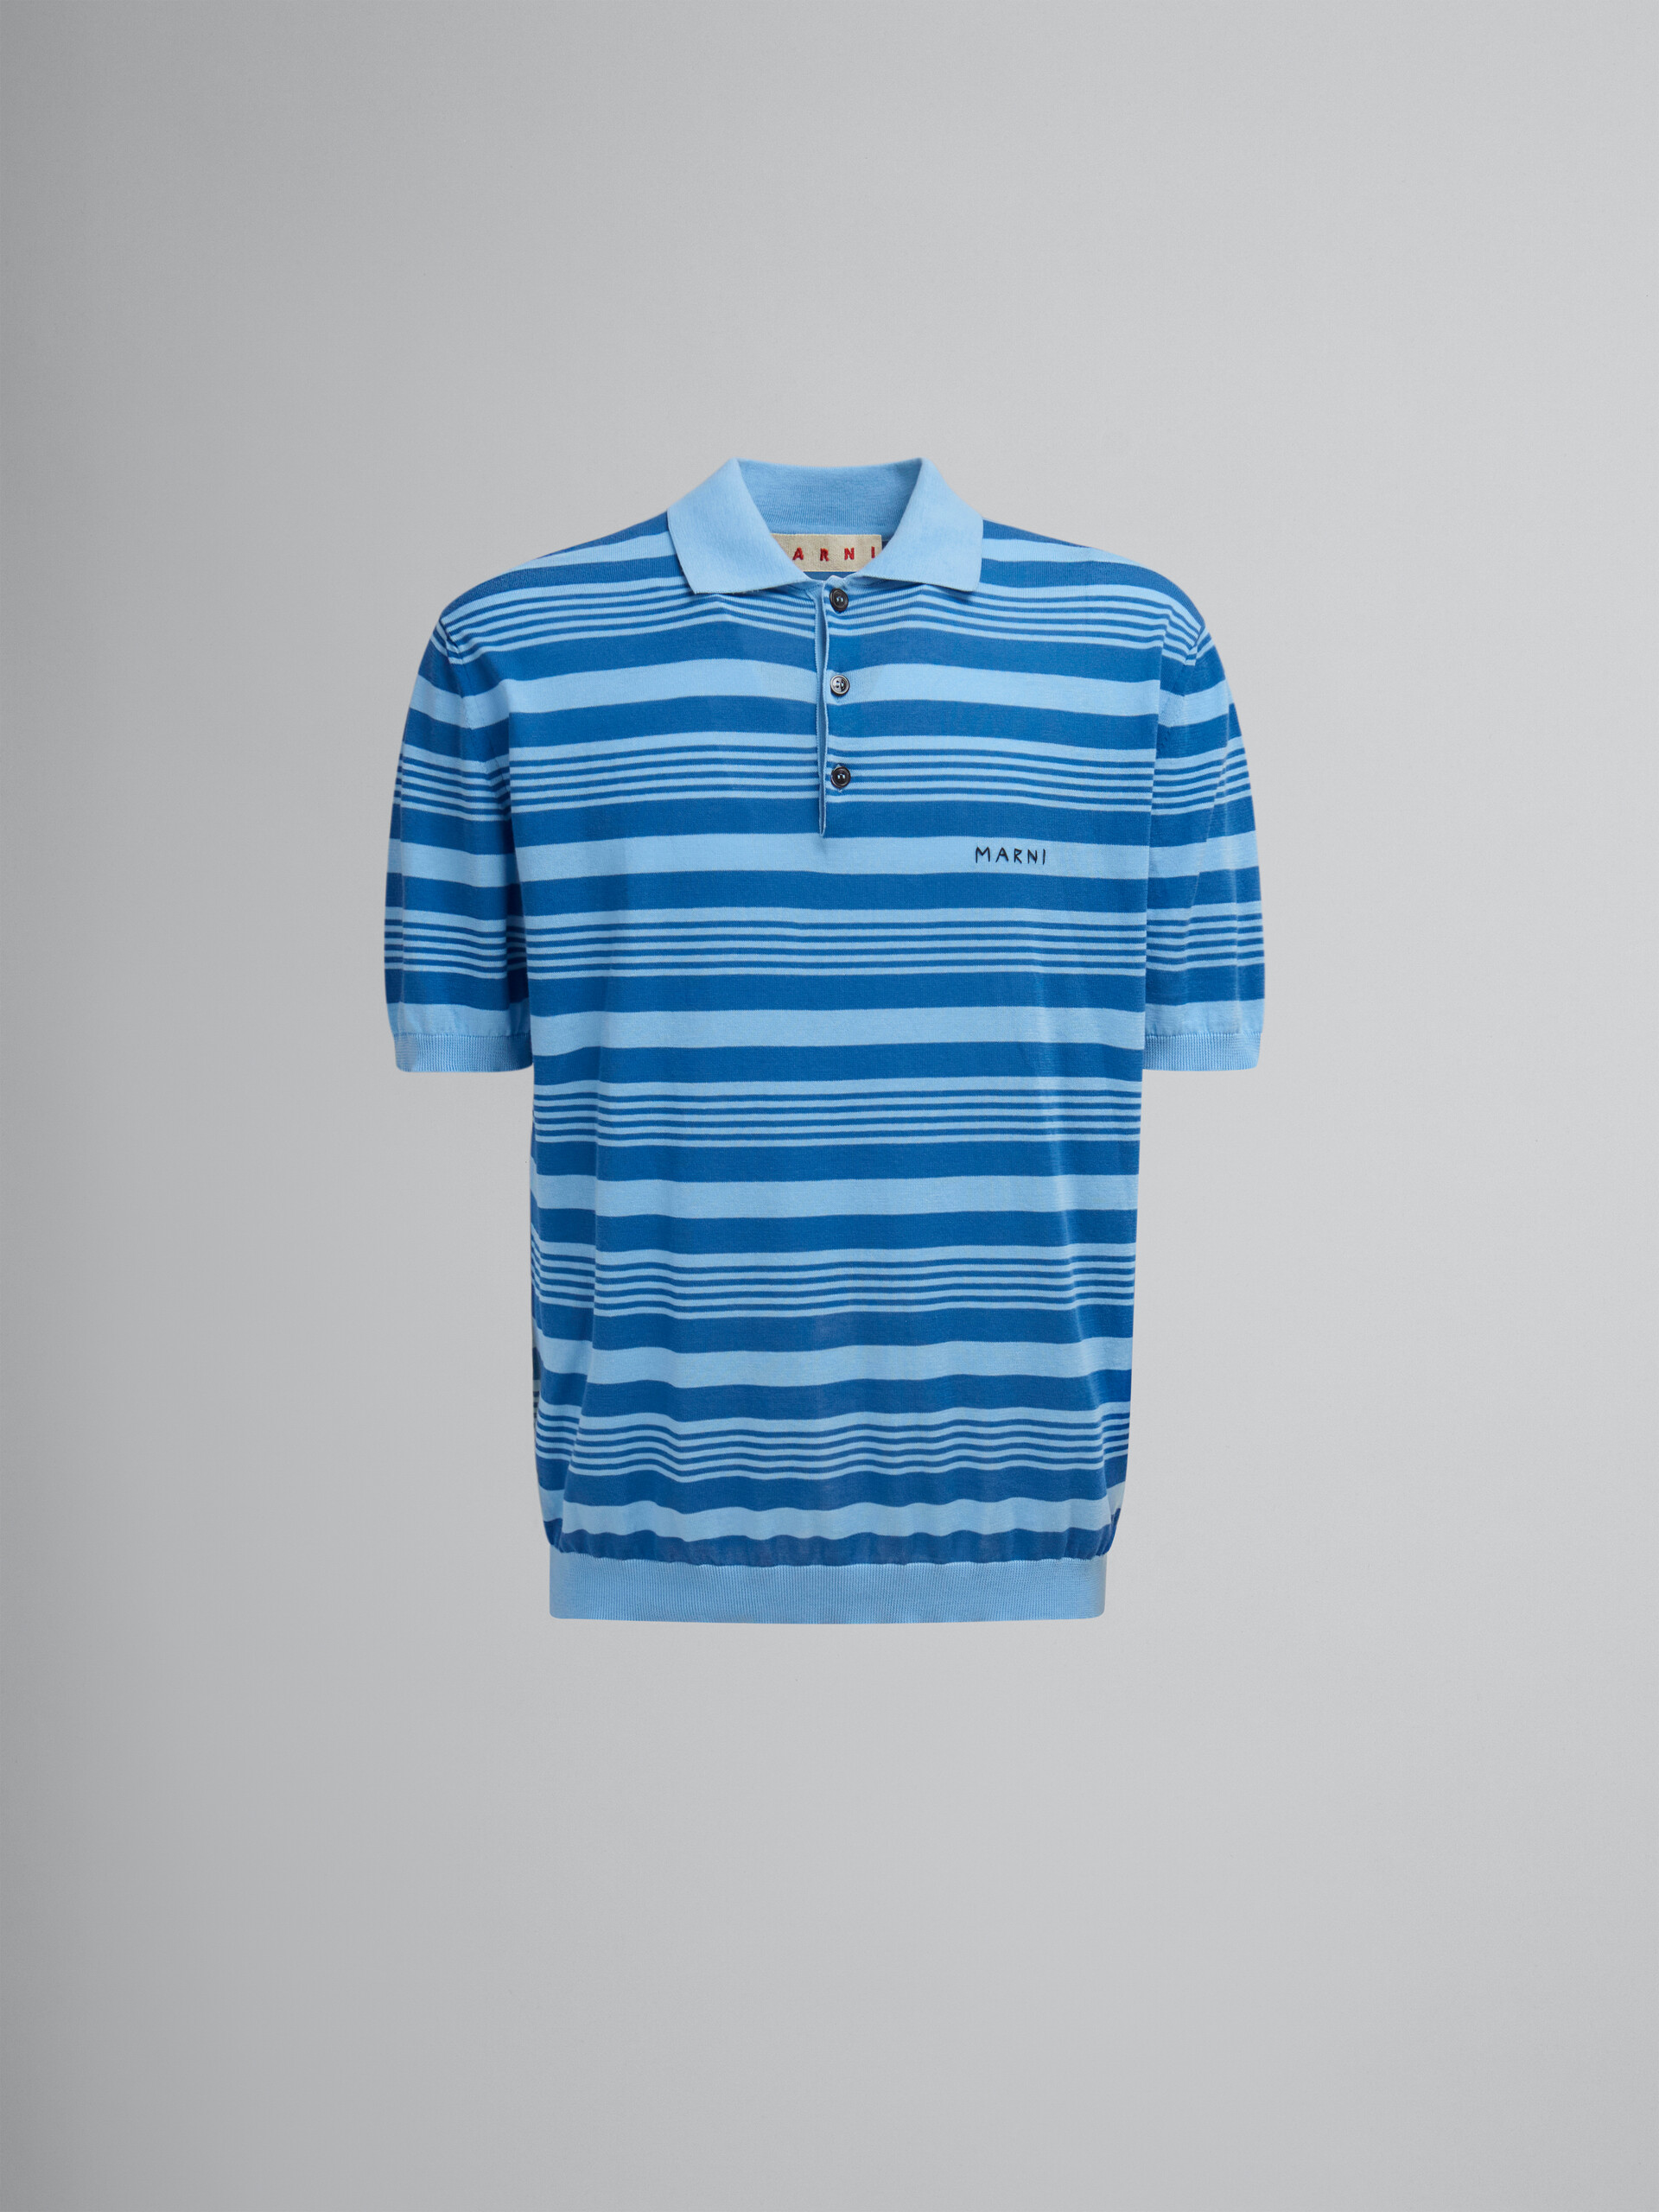 ブルー ストライプ コットン製 ポロシャツ、マルニメンディング - シャツ - Image 1